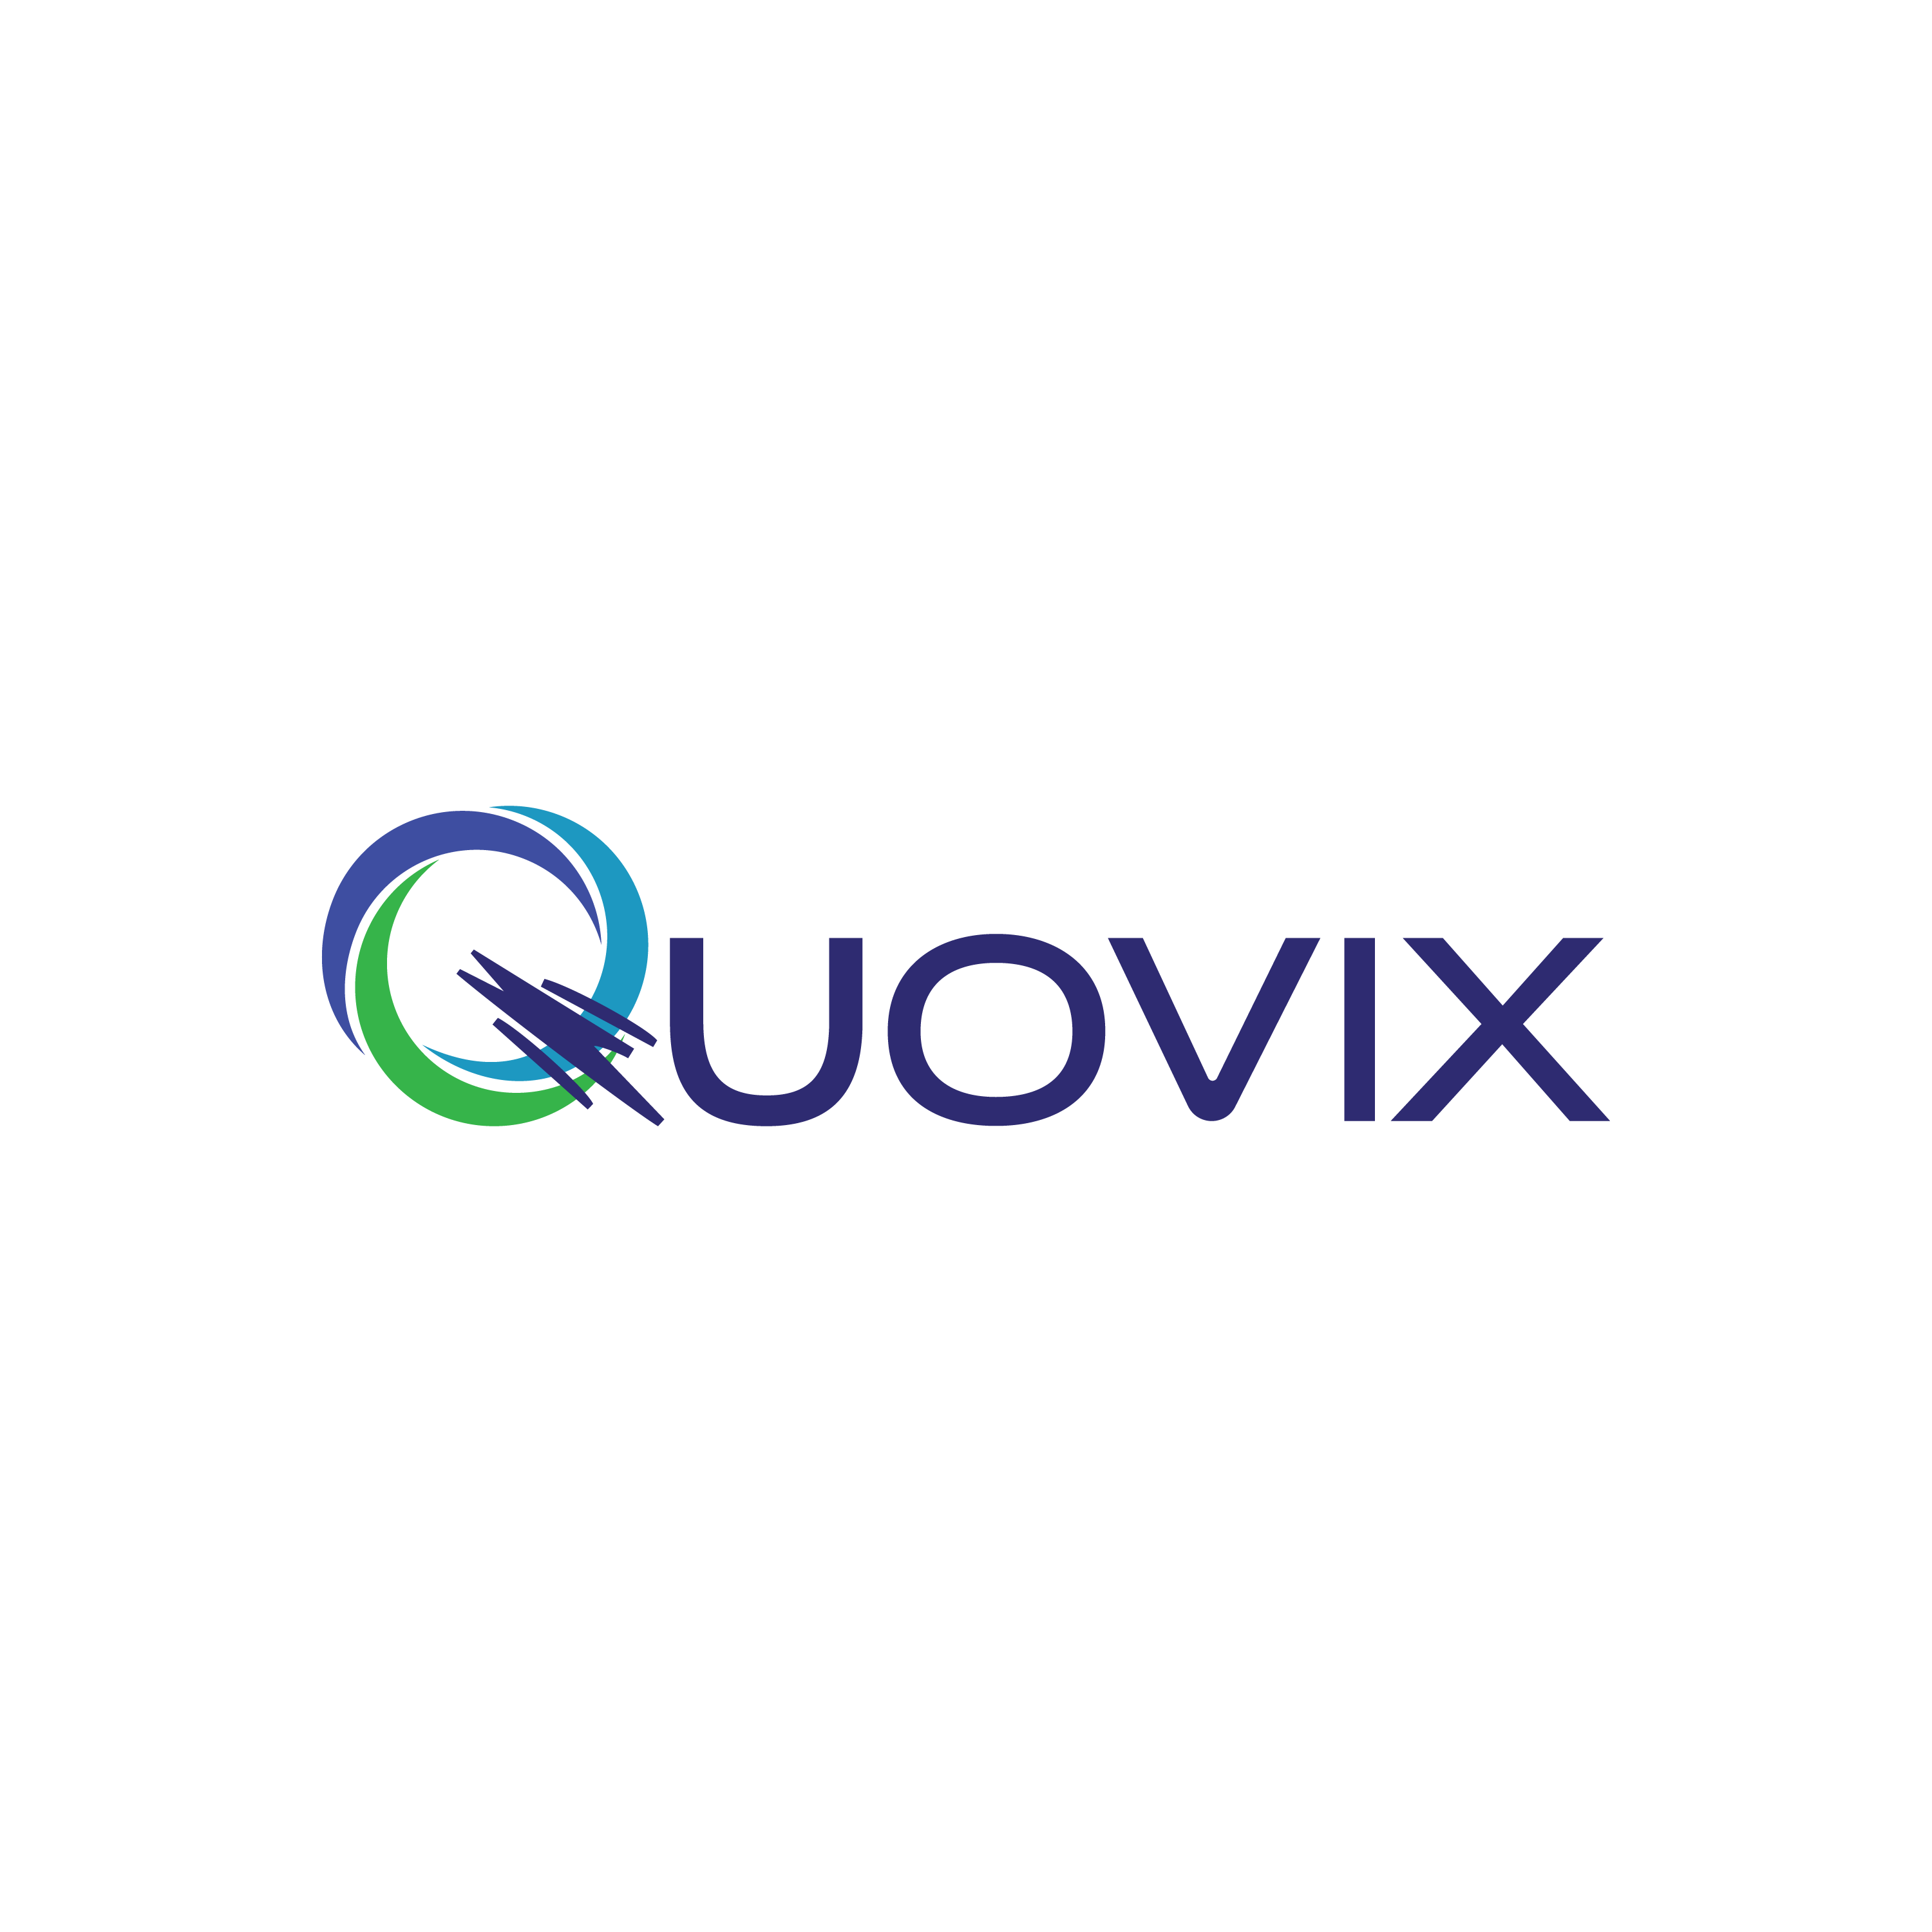 Quovix